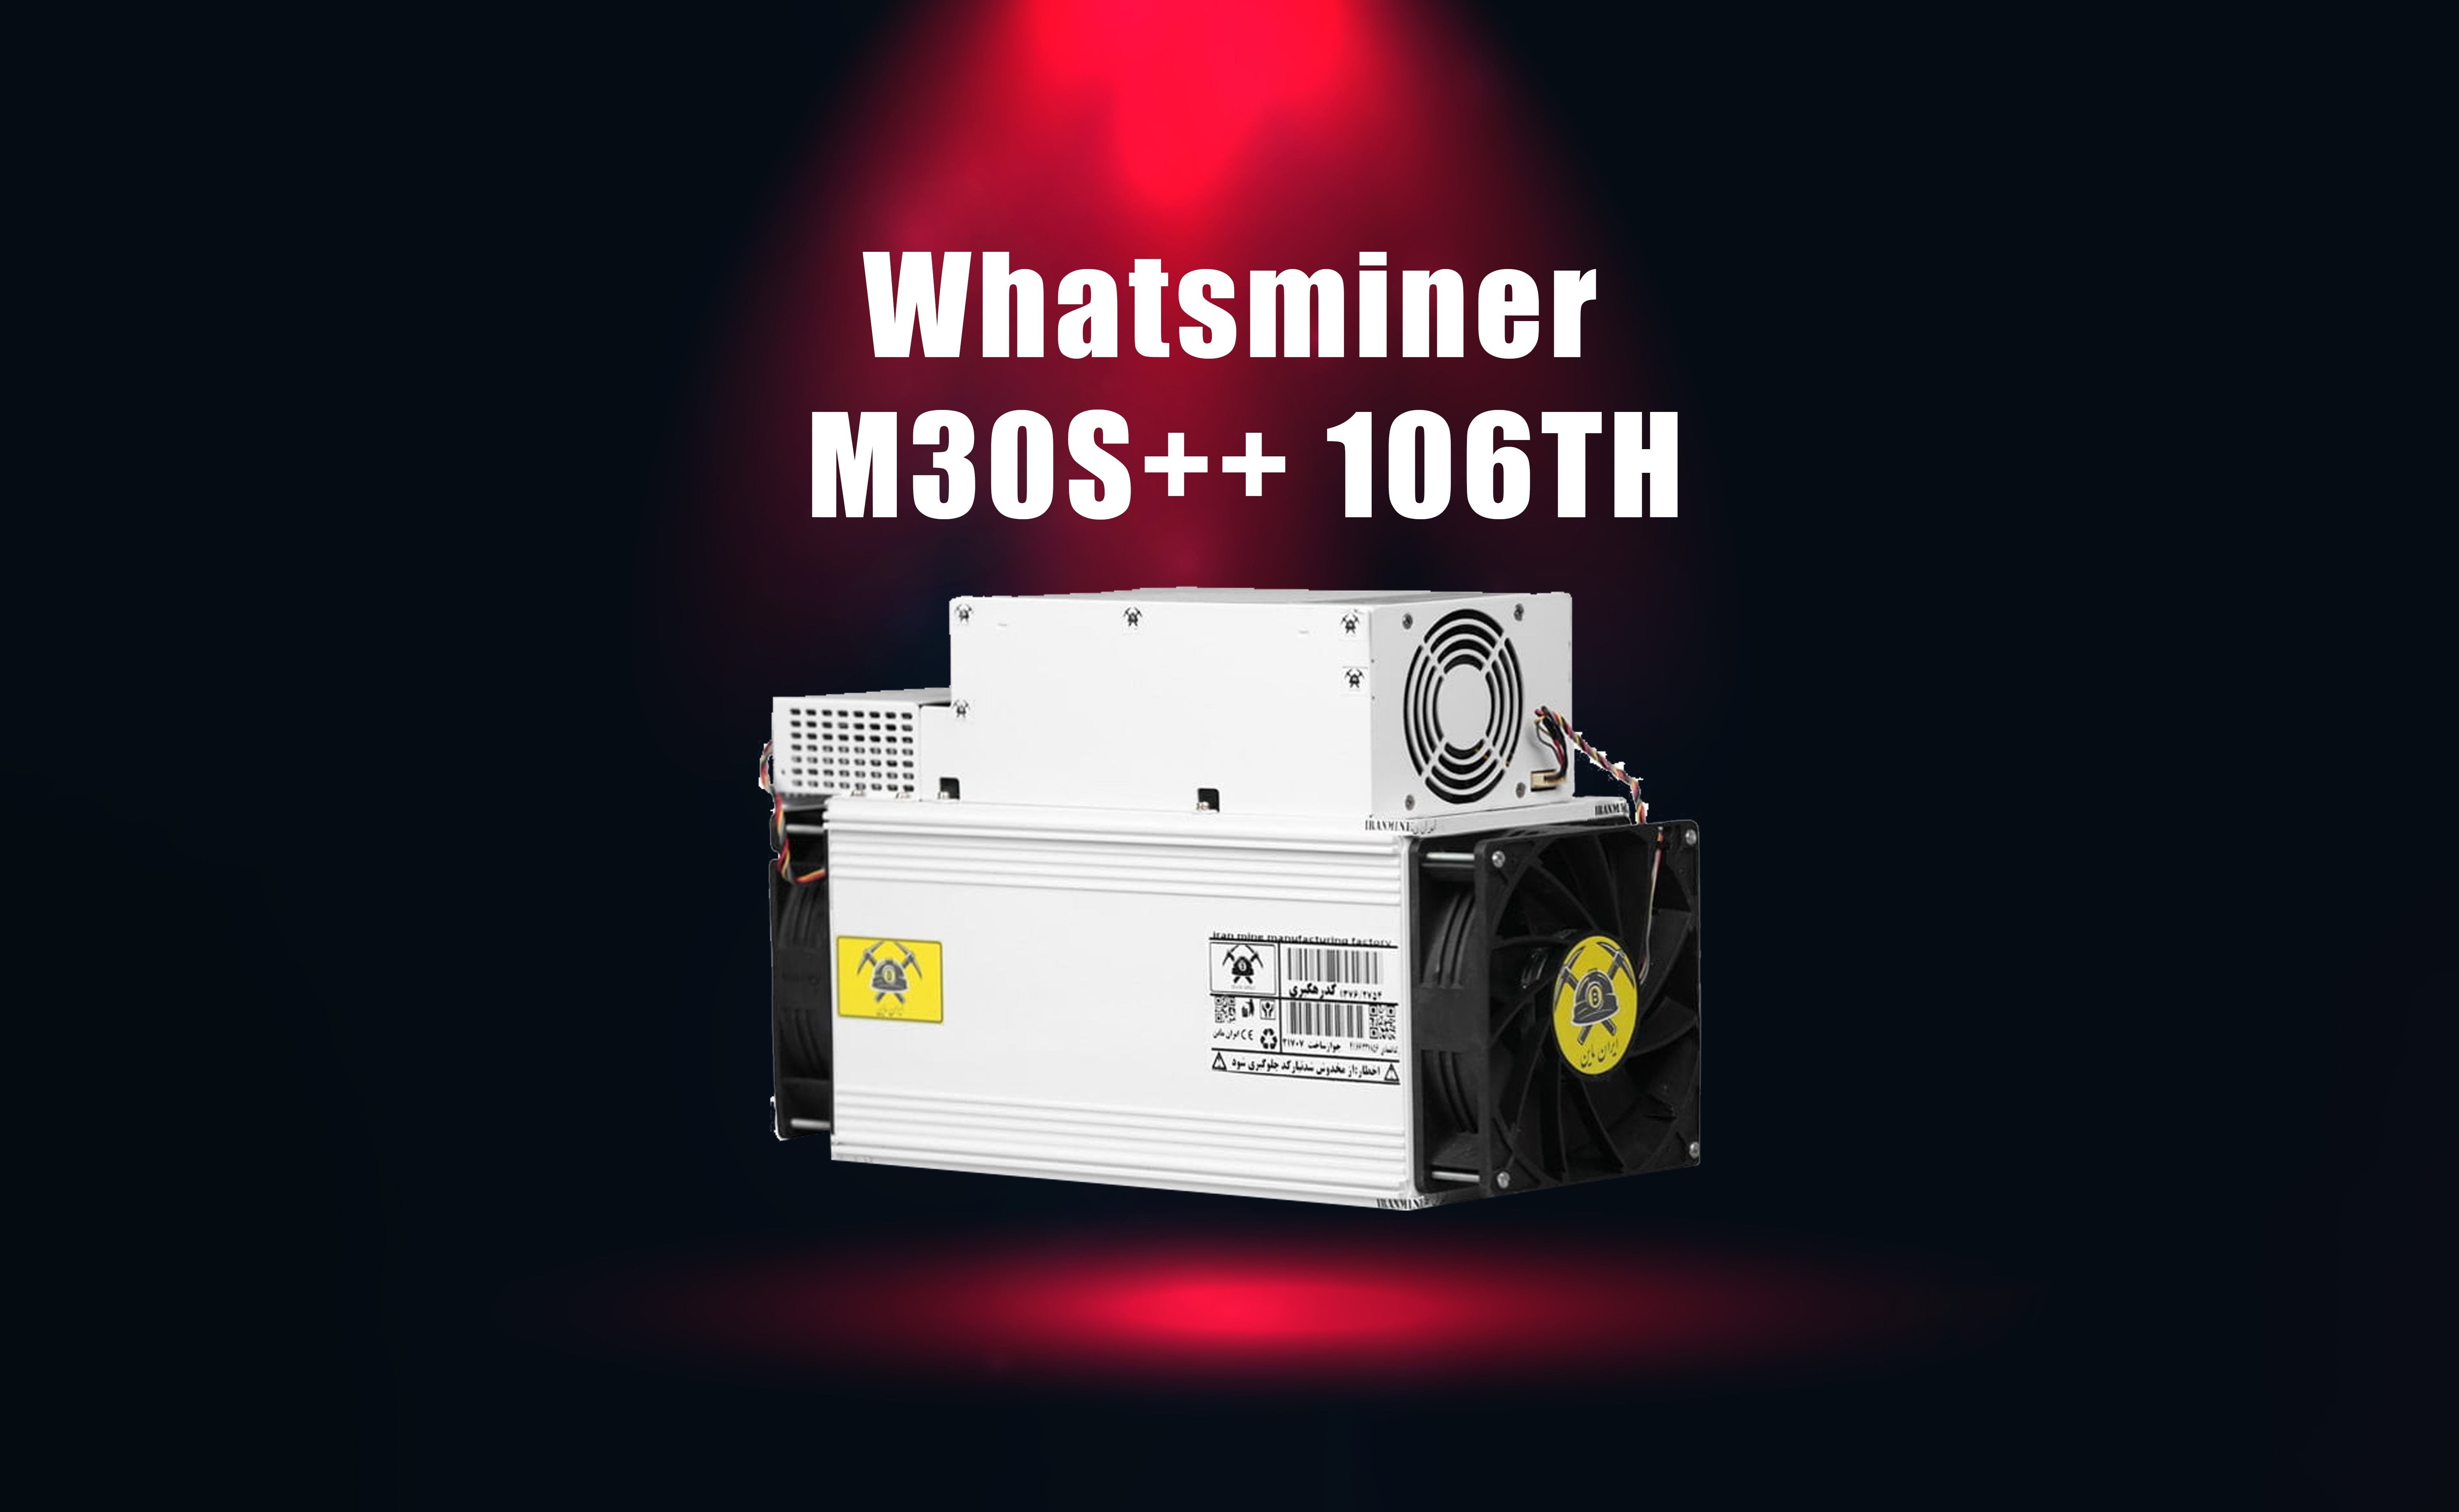 معرفی ماینر واتس ماینر Whatsminer M30S++ 106TH